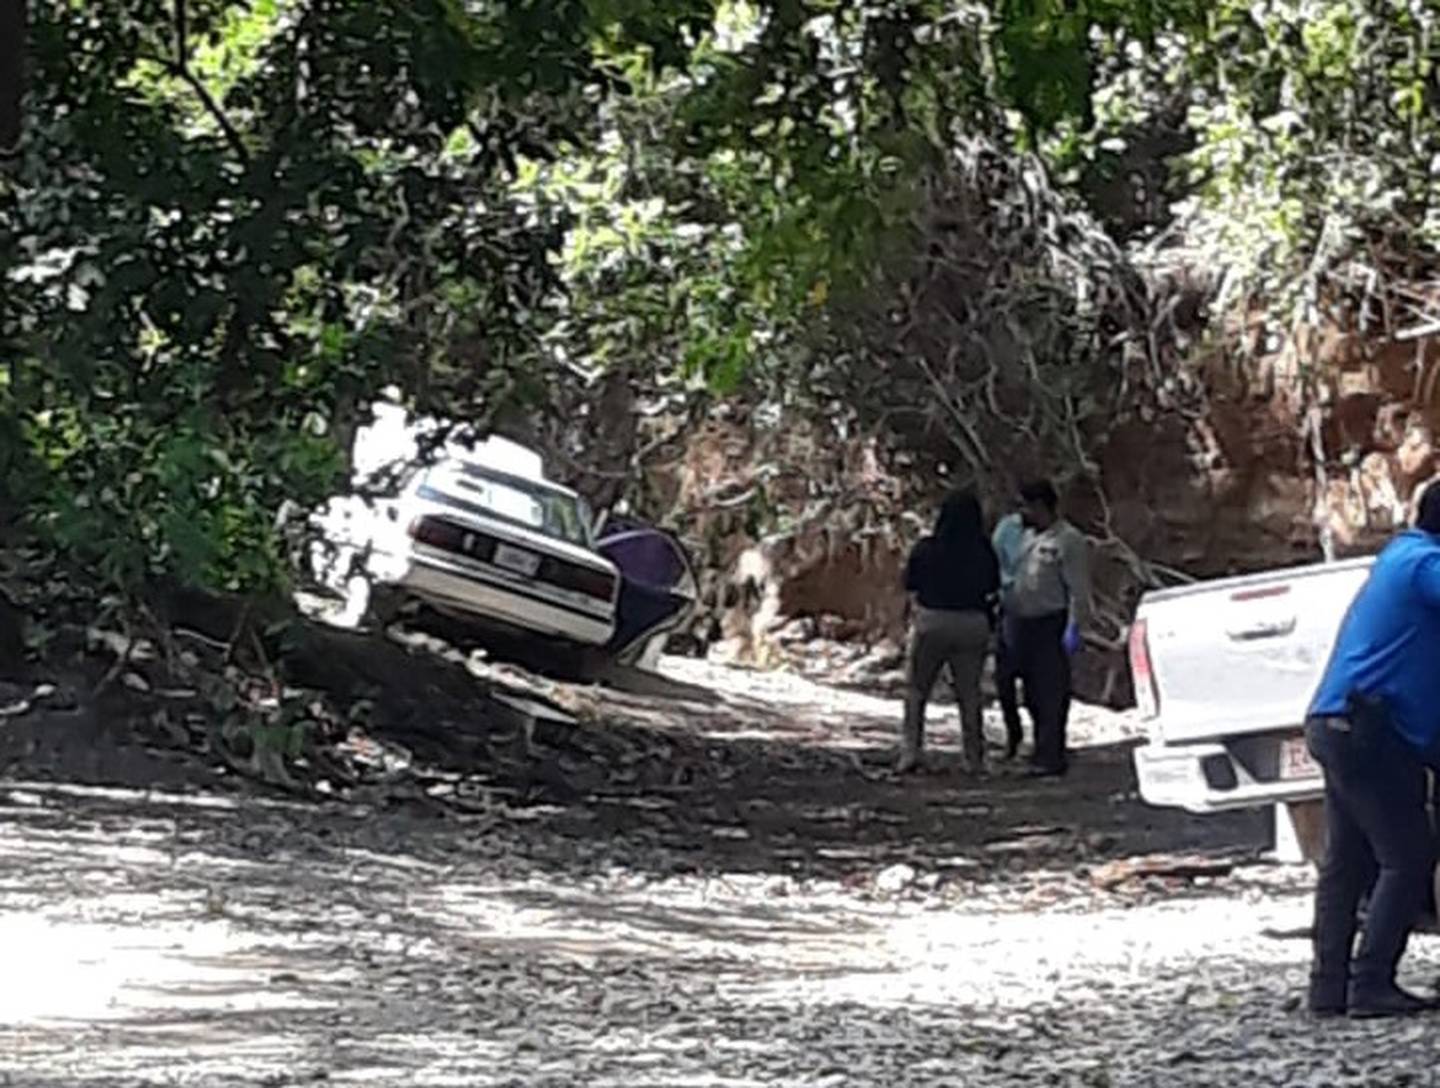 Taxista informal asesinado en Sardinal de Carrillo, Guanacaste. Foto cortesía.